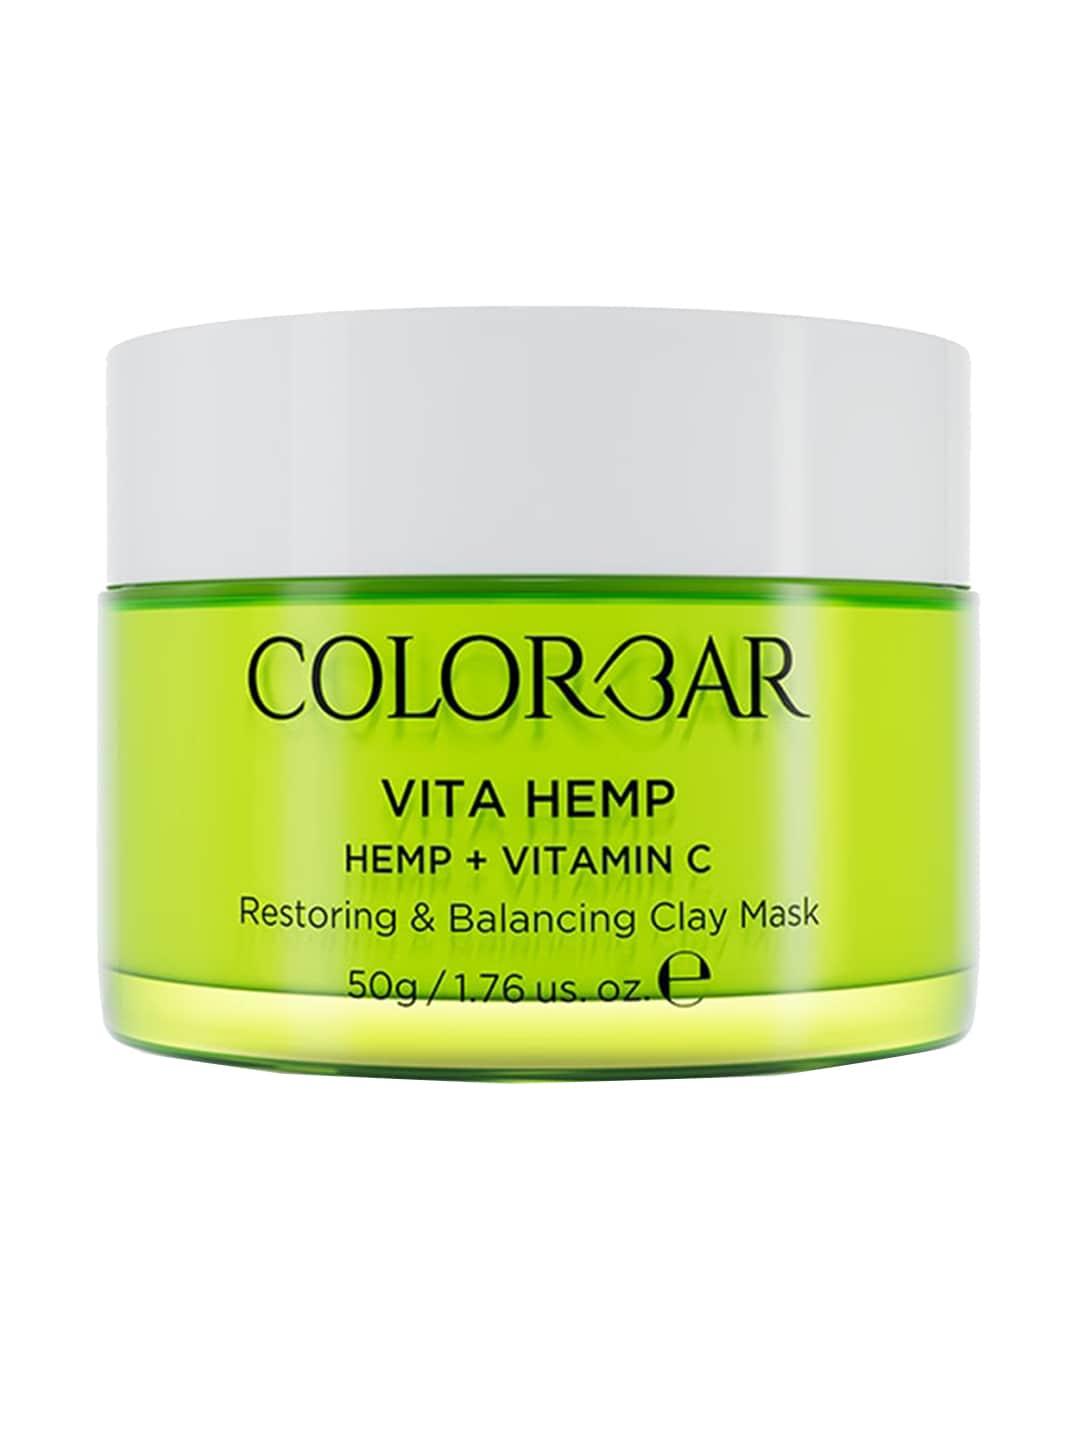 Colorbar Vita Hemp Restoring & Balancing Clay Mask with Vitamin C - 50g